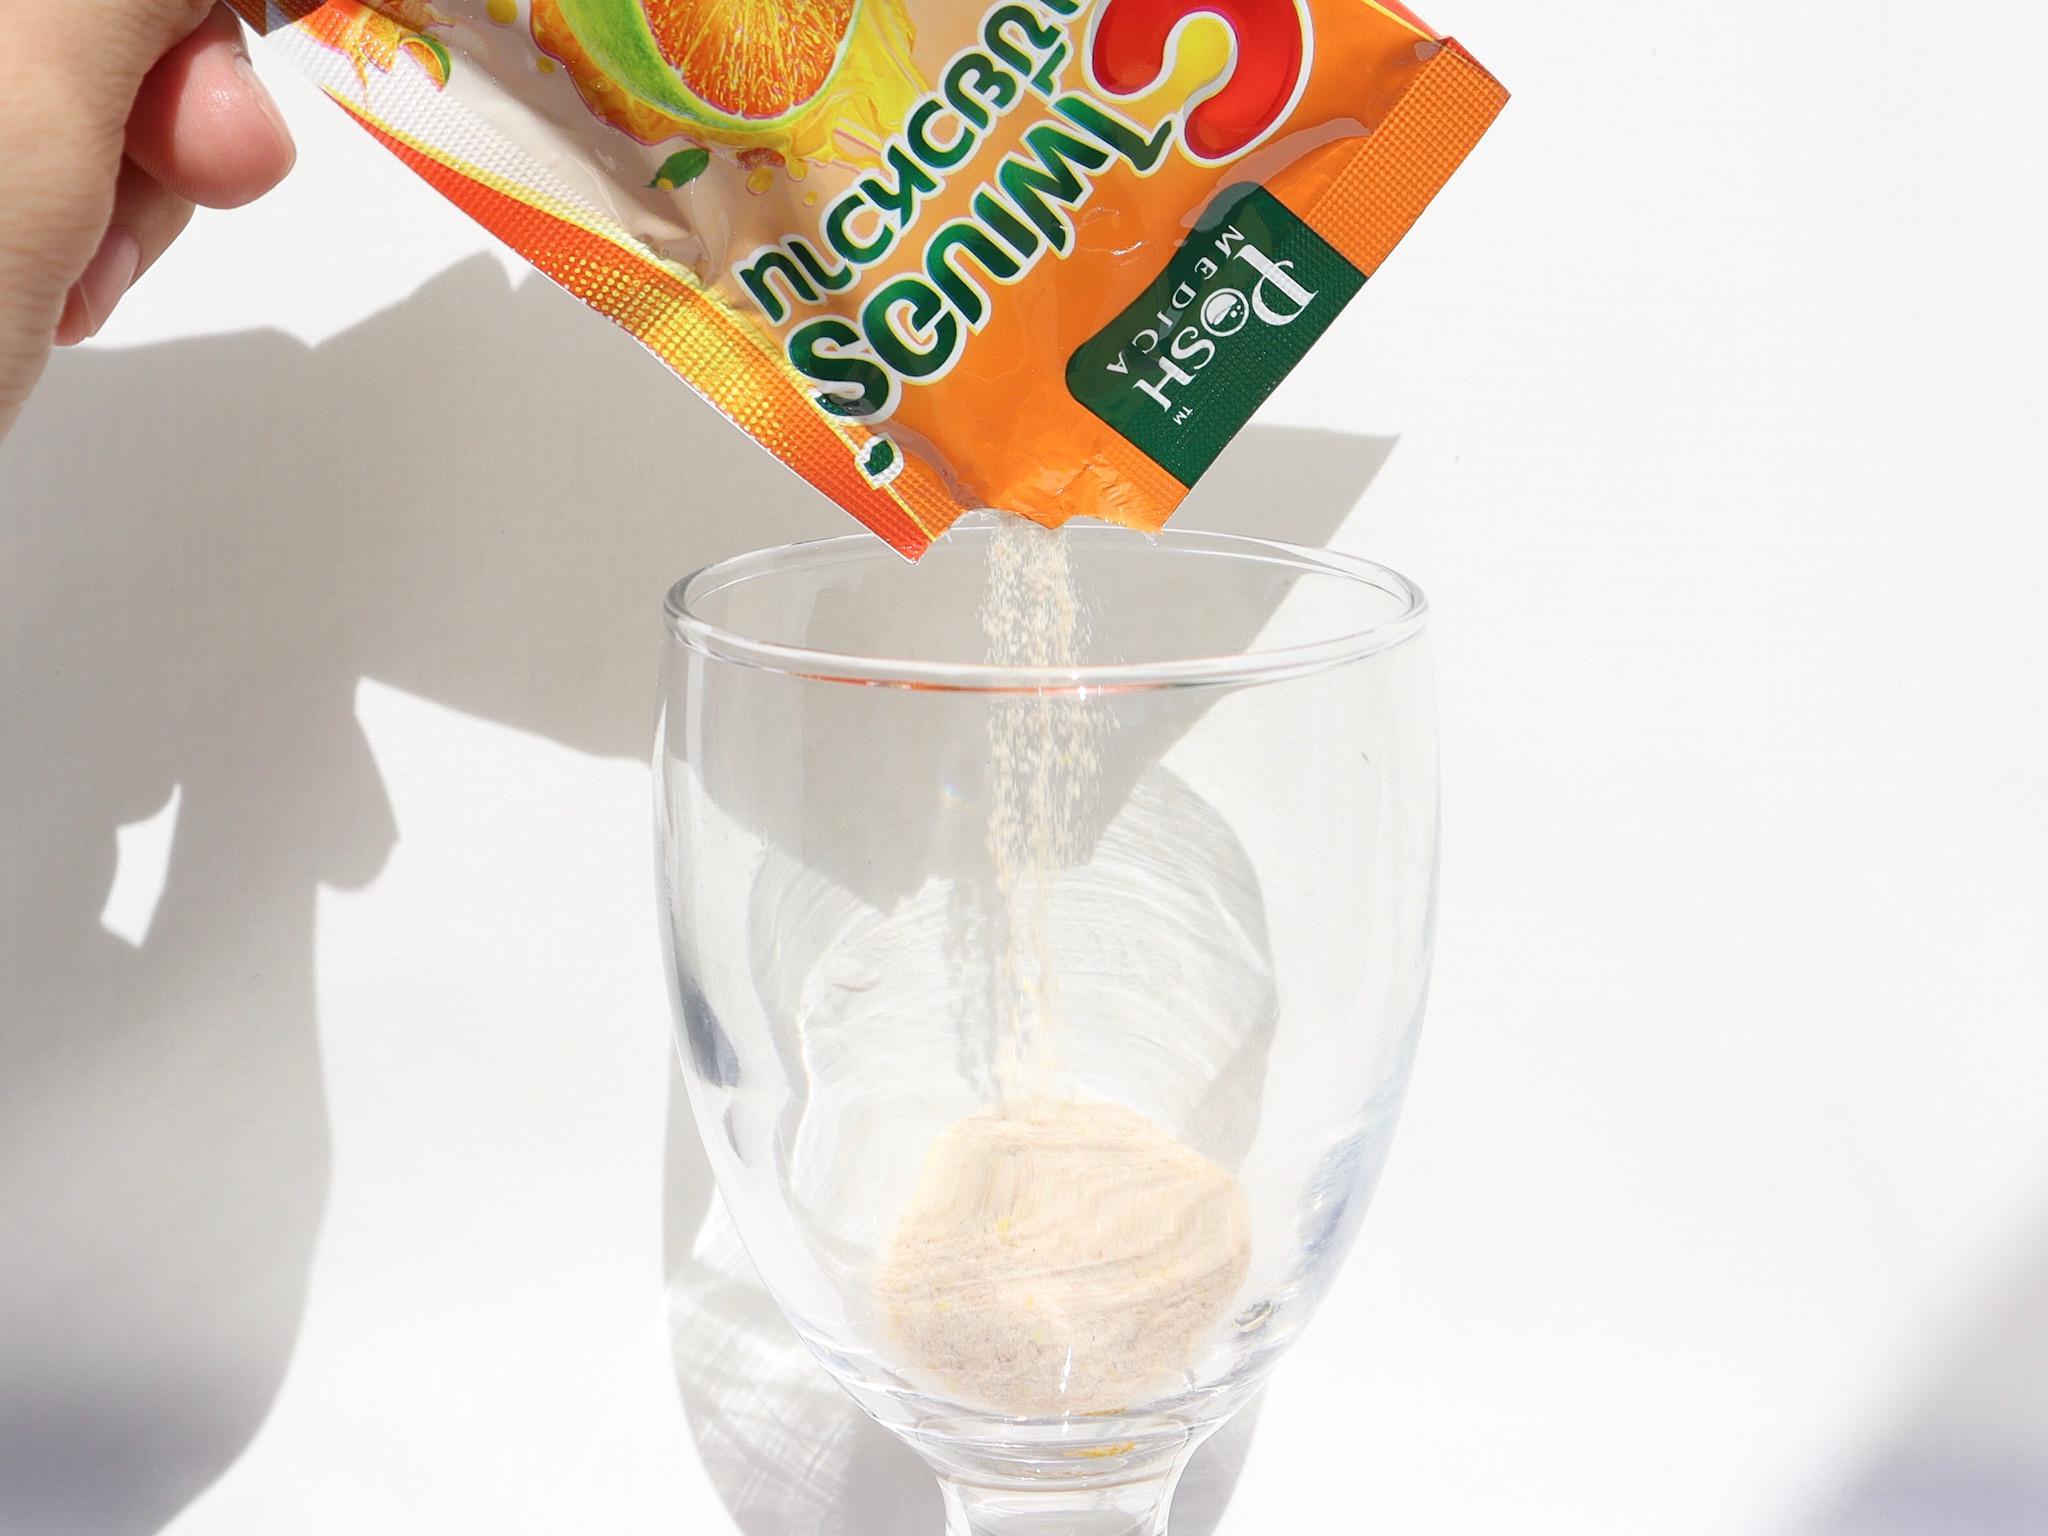 ภาพหน้าปก ซีไฟเบอร์ส้มเขียวหวาน | อร่อย เหมือนดื่มน้ำส้มคั้นแท้ๆ! ที่:1